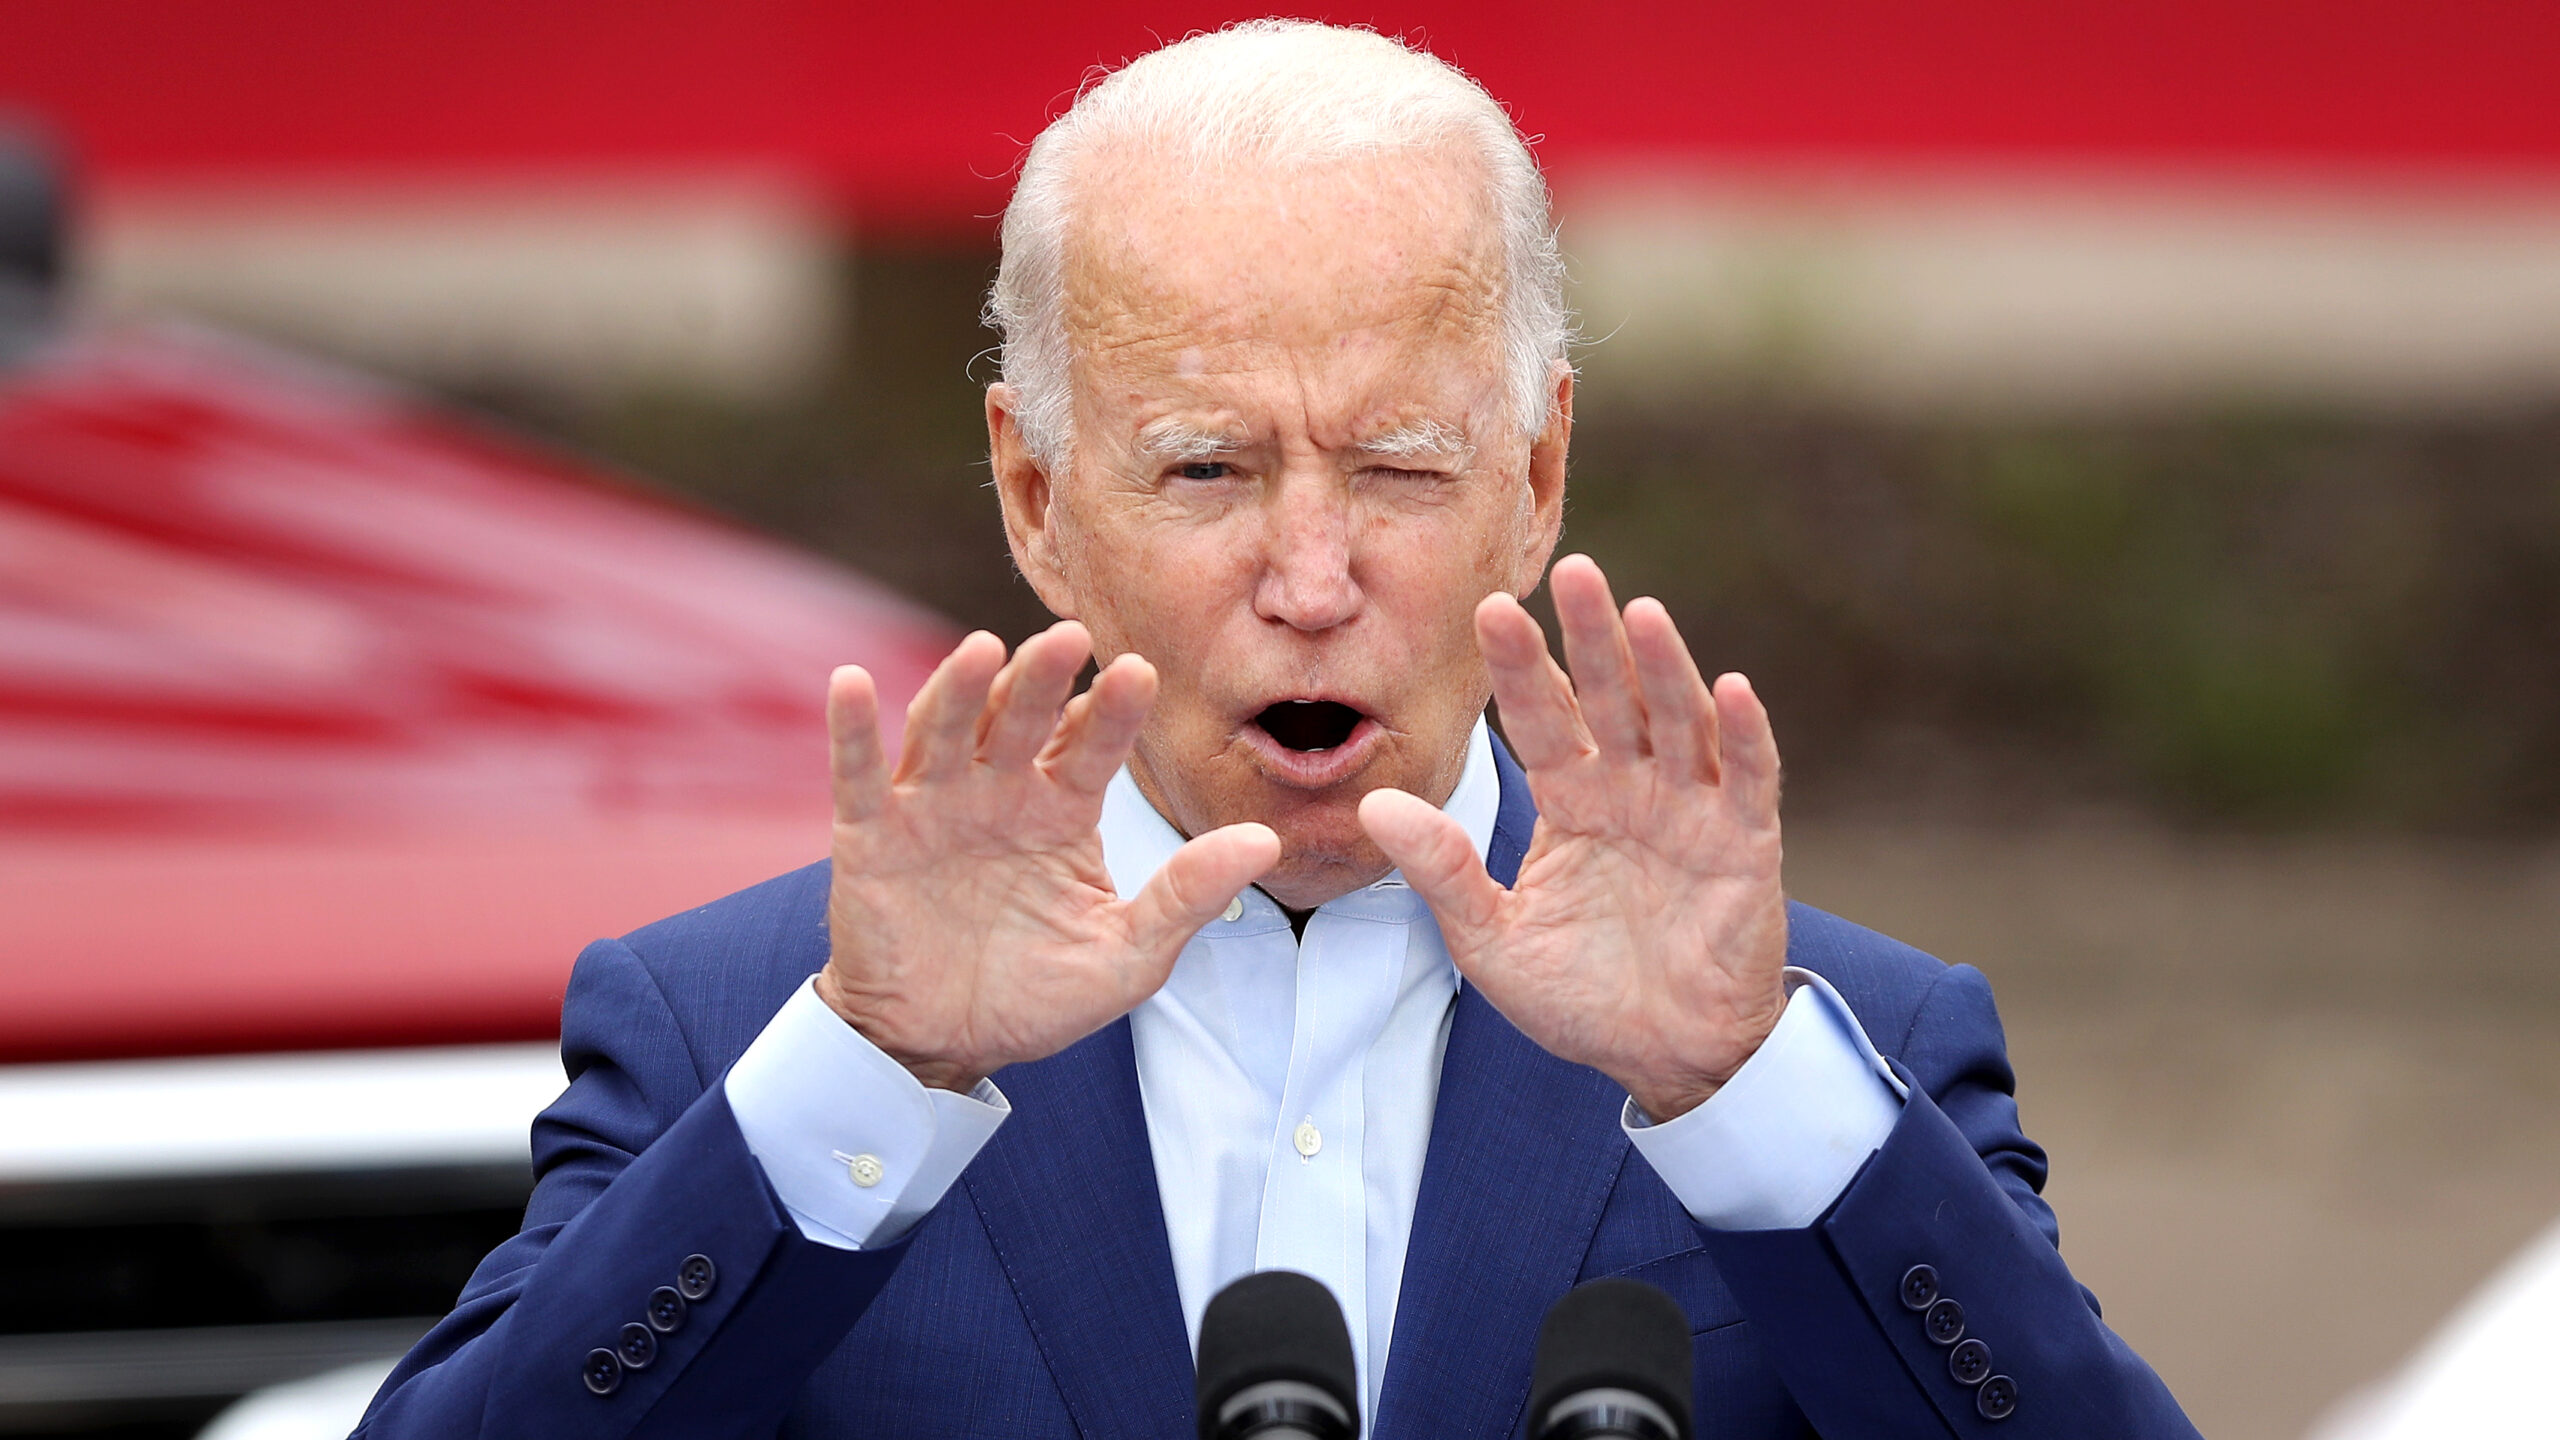 Xuất hiện video ông Joe Biden gọi lính Mỹ là 'những tên khốn ngu ngốc' 